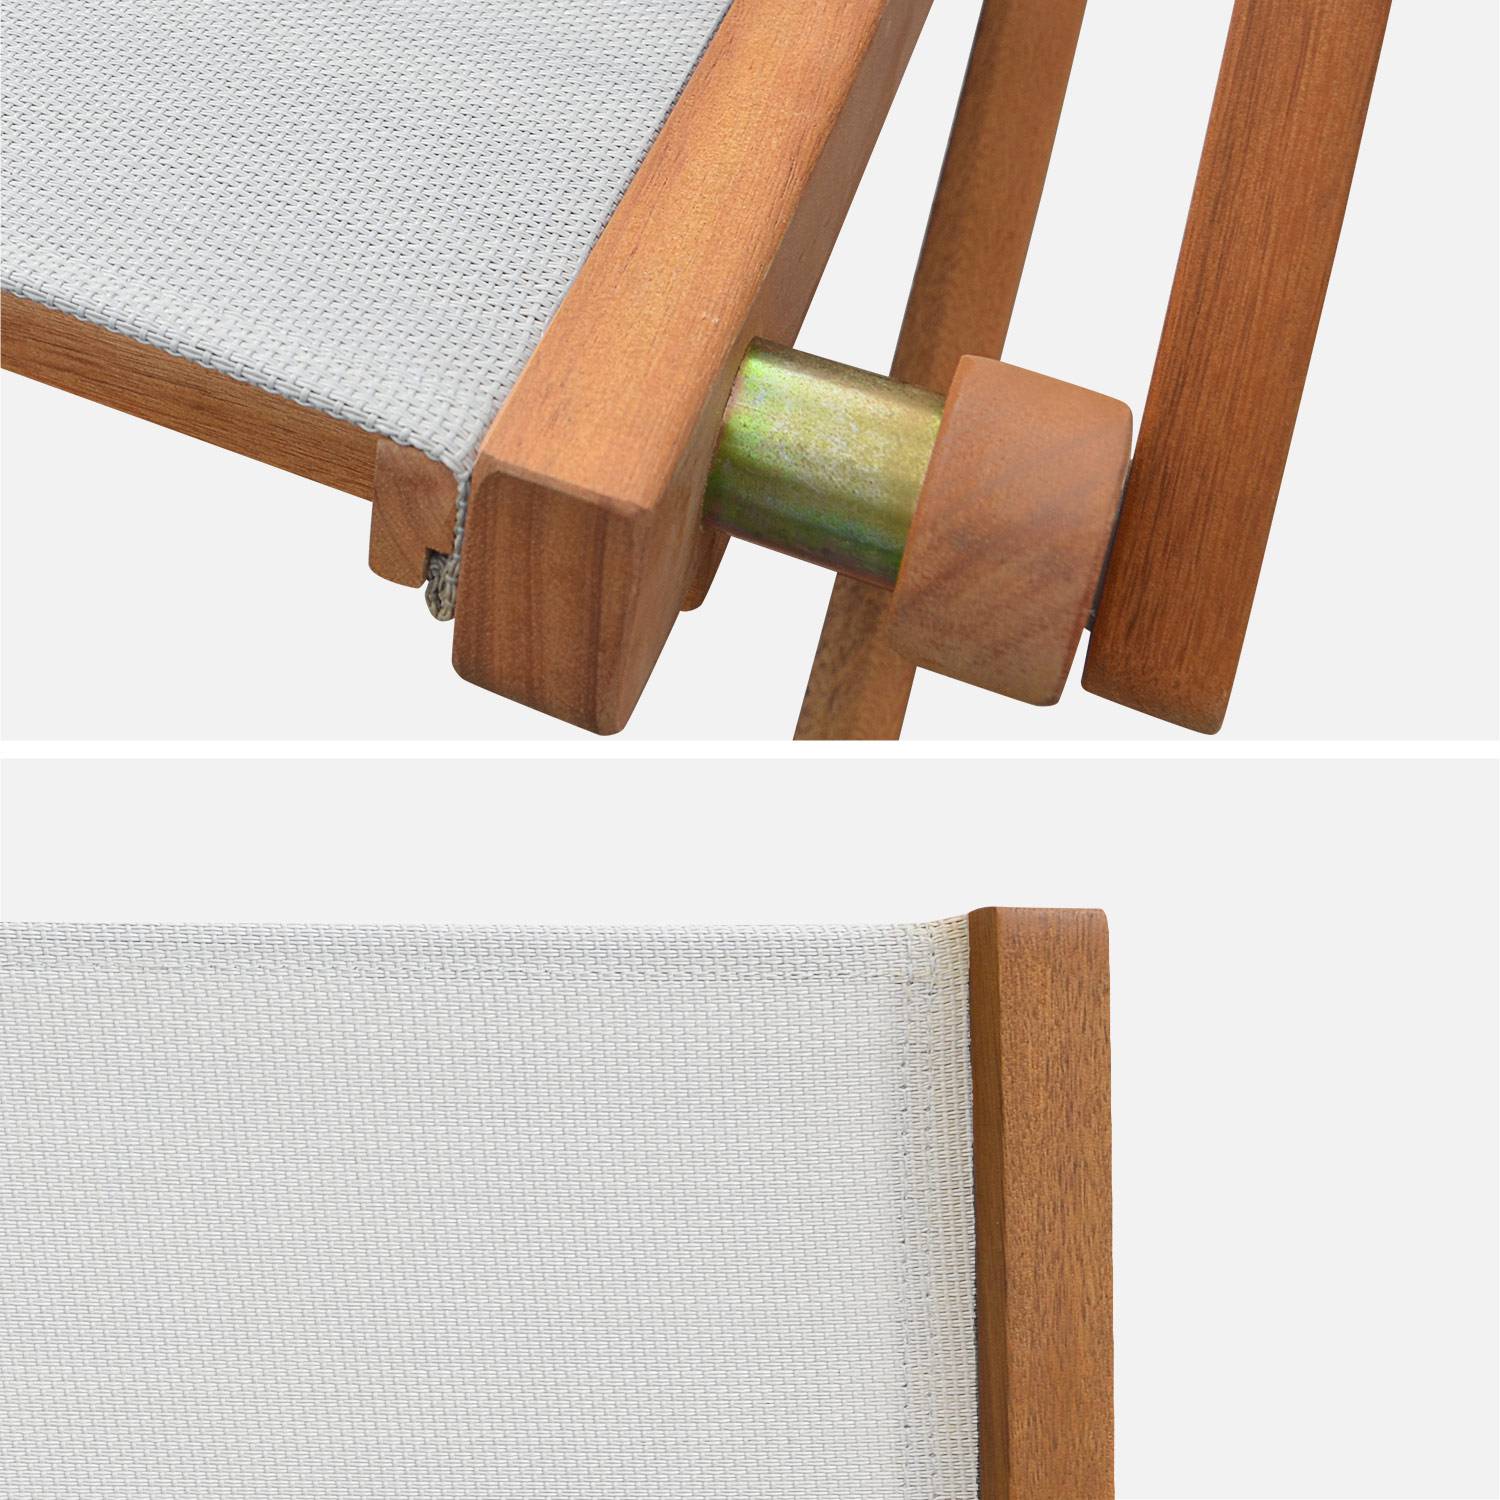 Sedie da giardino, in legno e textilene - modello: Almeria, colore: Bianco - 2 sedie pieghevoli in legno di eucalipto FSC oliato e textilene Photo5